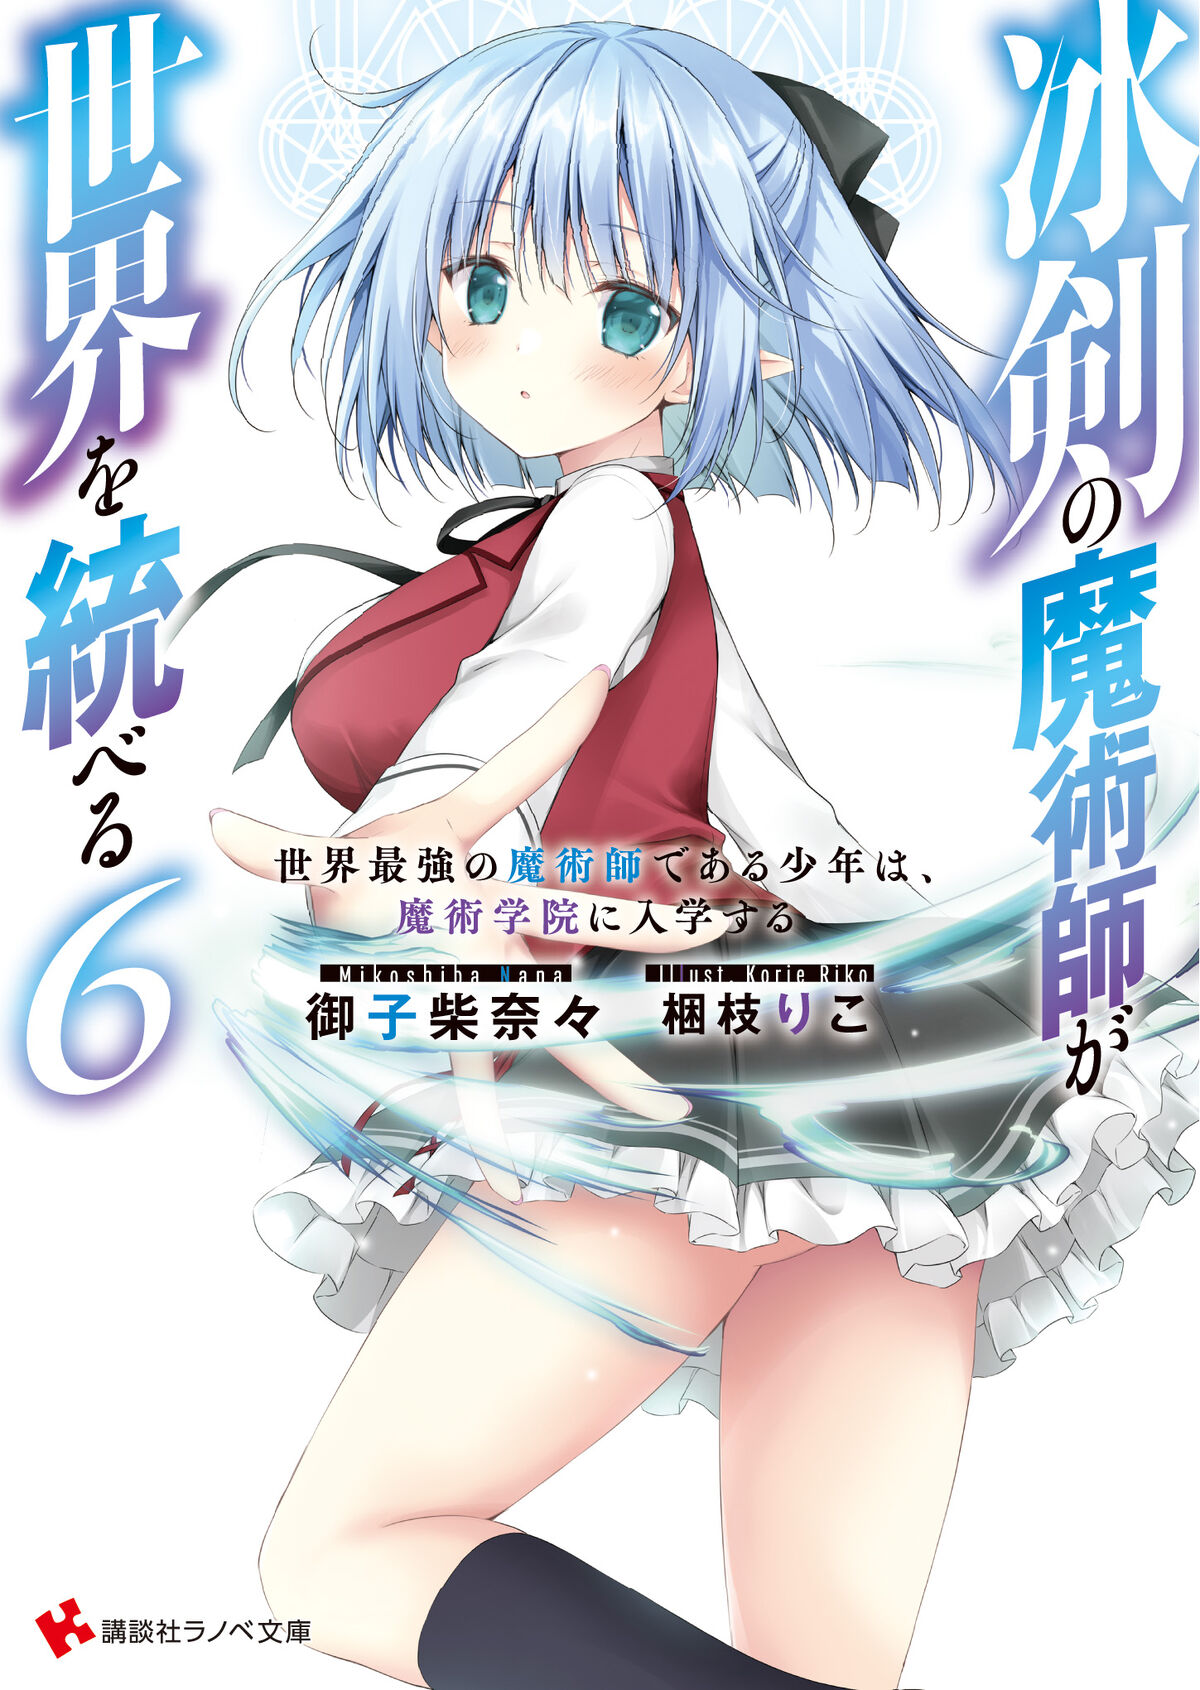 Hyouken no Majutsushi ga Sekai o Suberu - Anime - AniDB